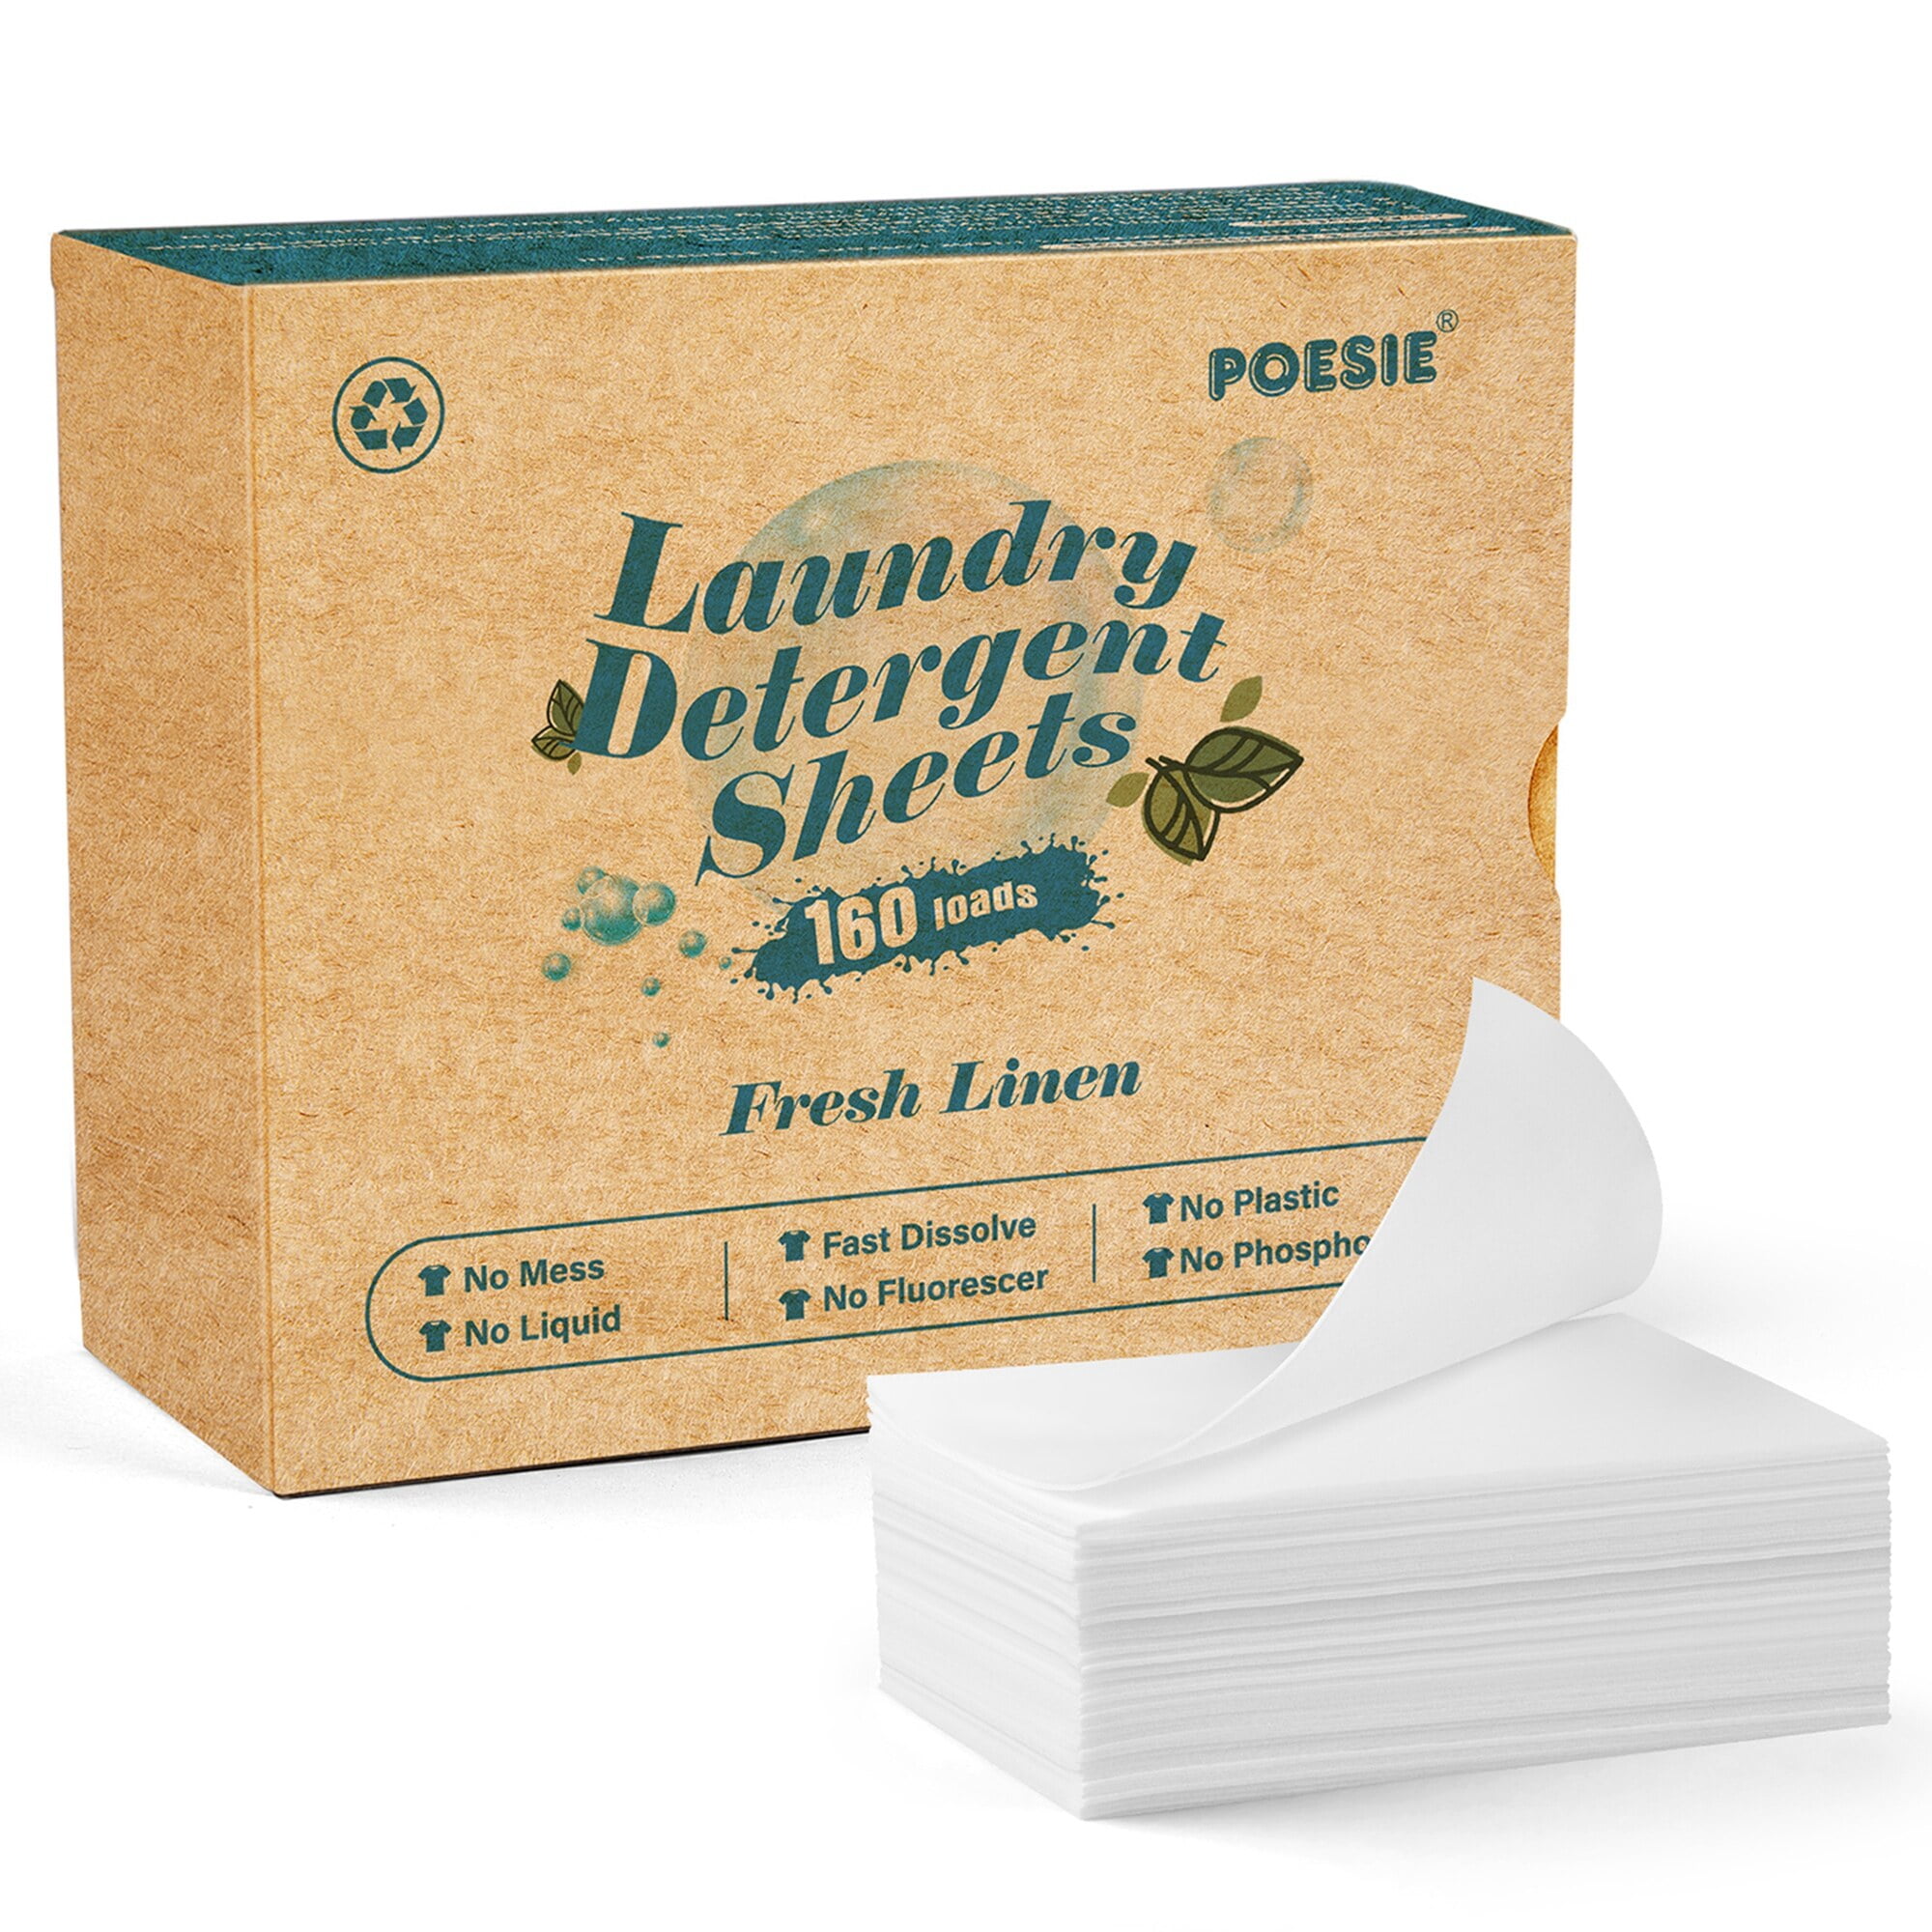 Earth Breeze Laundry Detergent Sheets - Fresh Scent - No Plastic Jug (